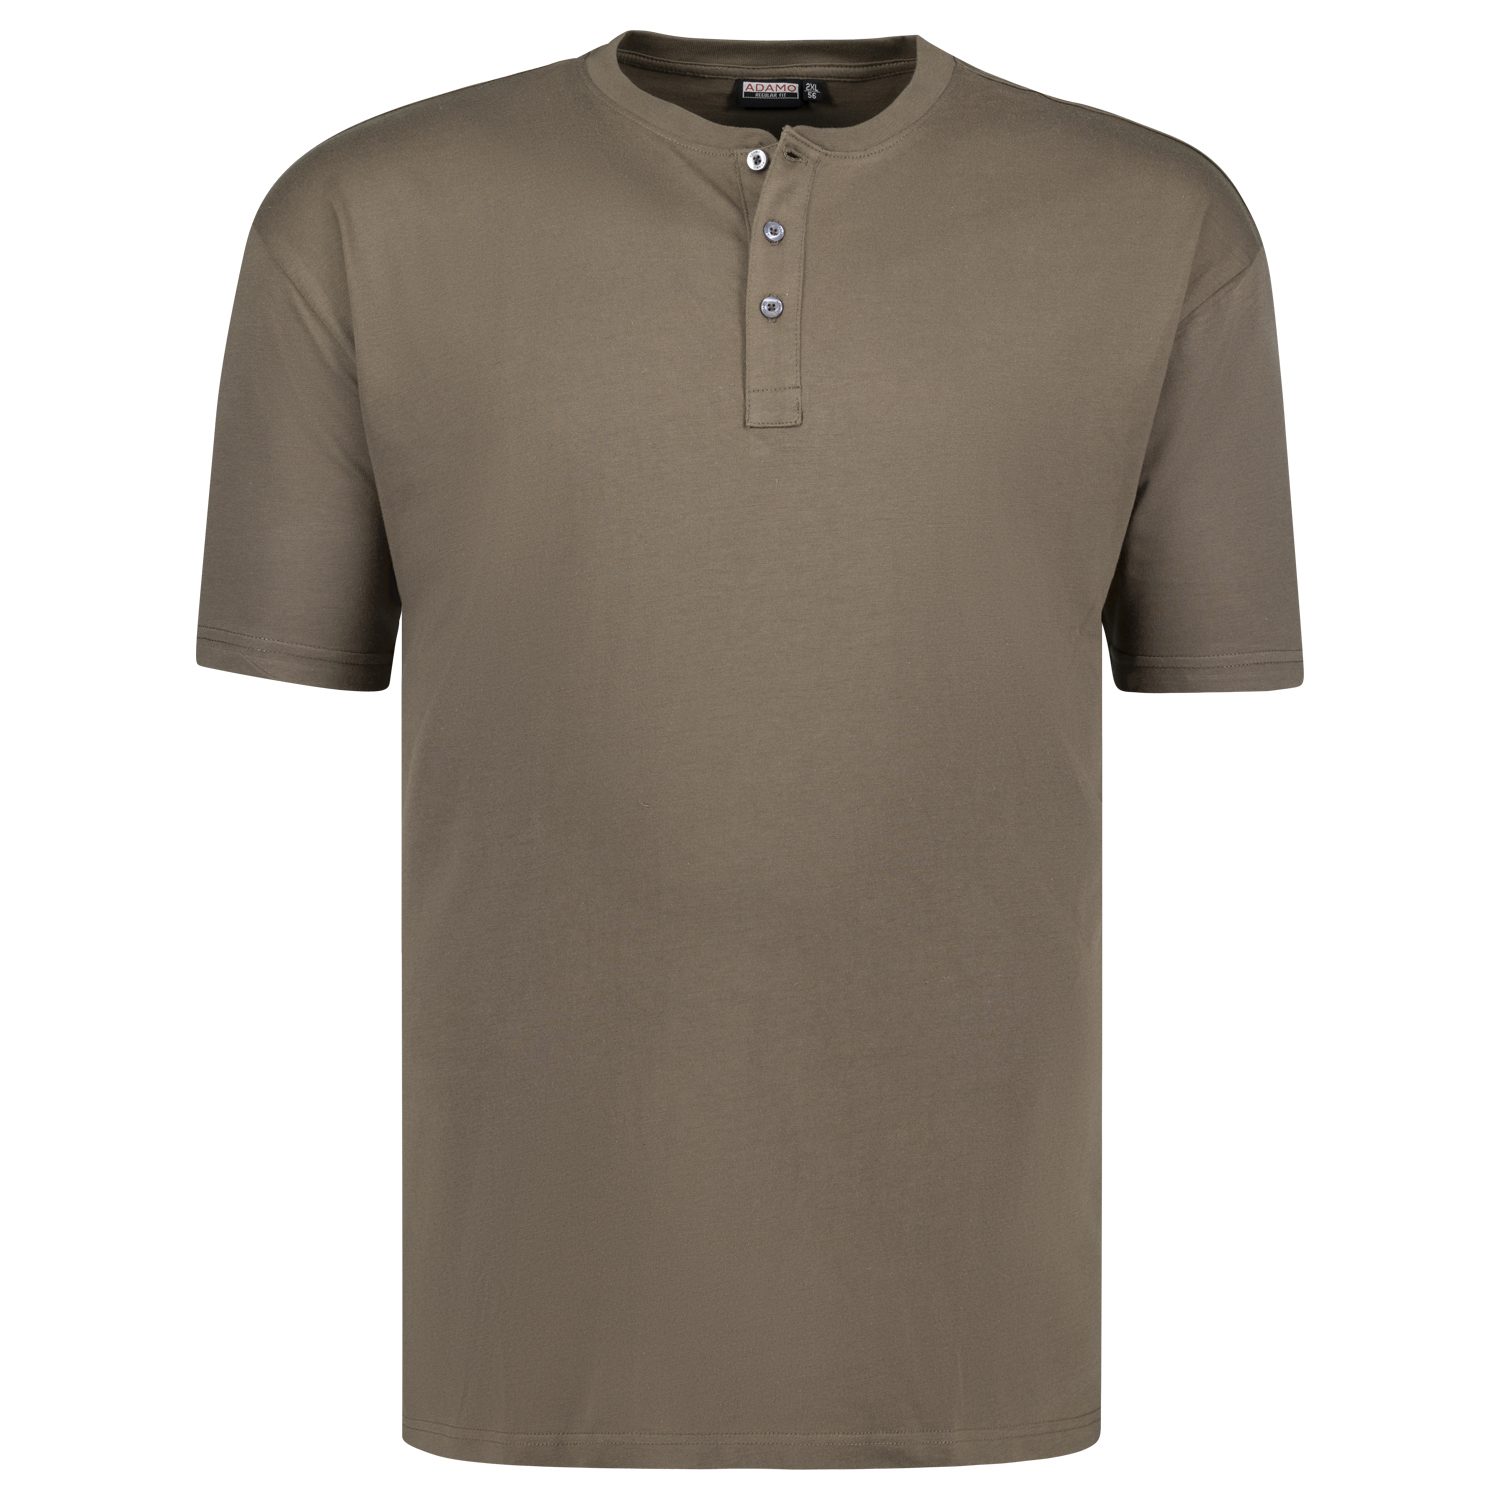 REGULAR FIT T-Shirt Modell Silas mit Knopfleiste in Übergrößen 2XL-10XL von Adamo khaki